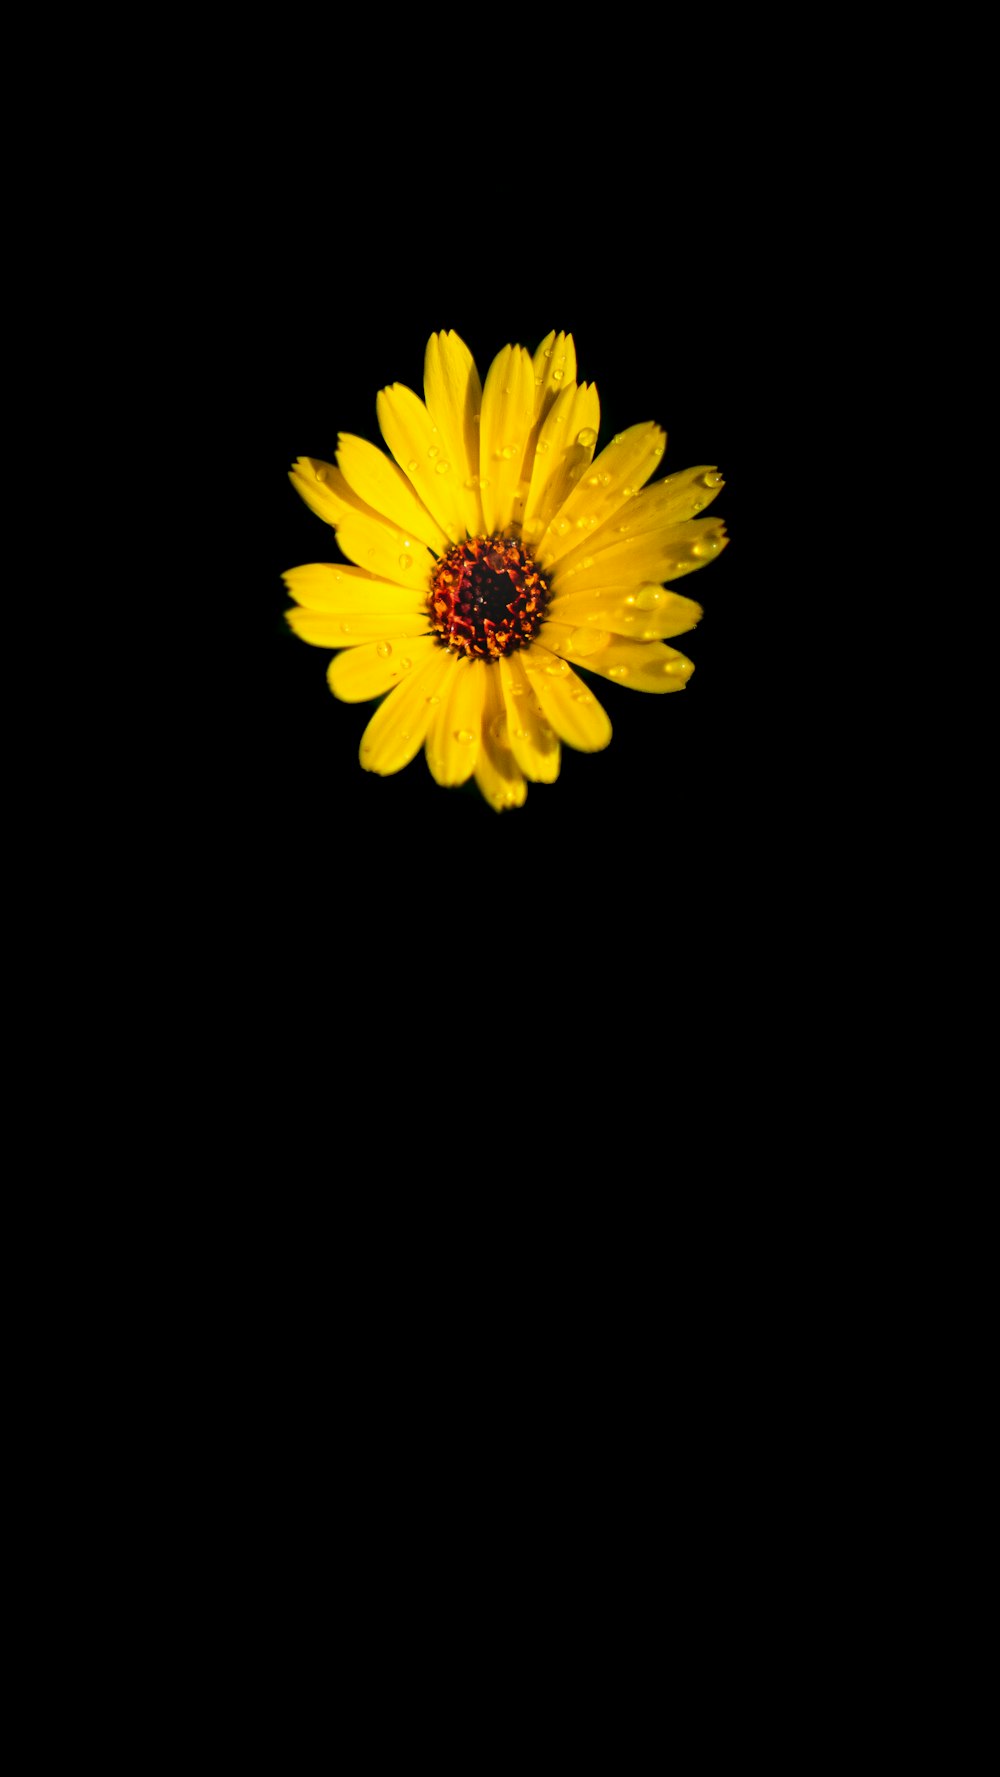 yellow flower with black background photo – Free Amoled Image on Unsplash